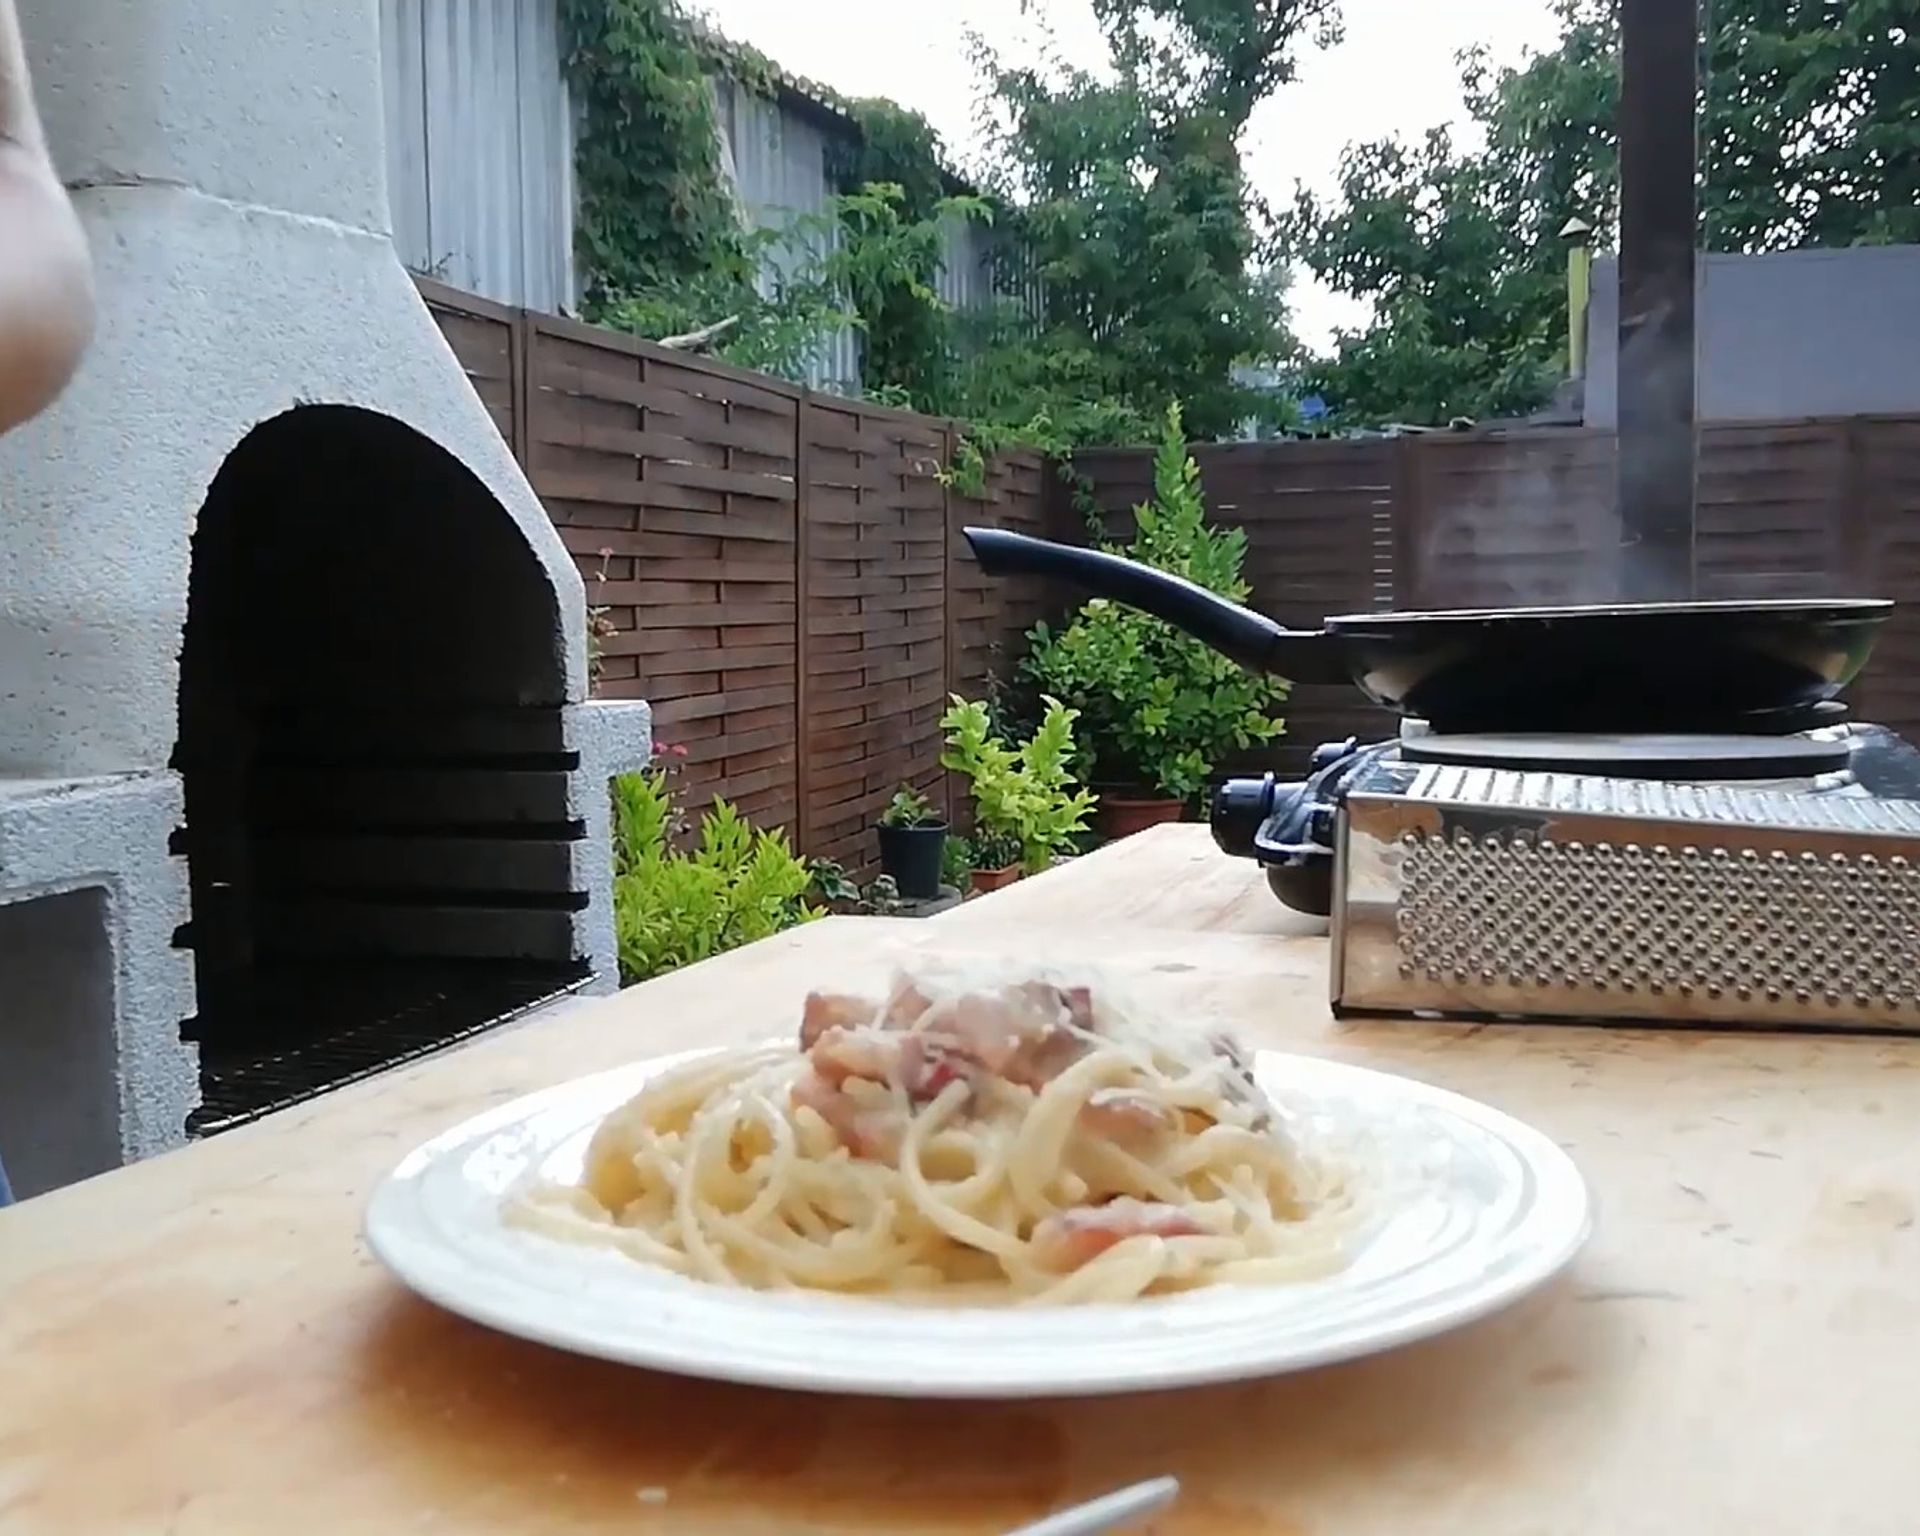 Špagety carbonara na tanieri, na stole, v pozadí strúhadlo a panvica